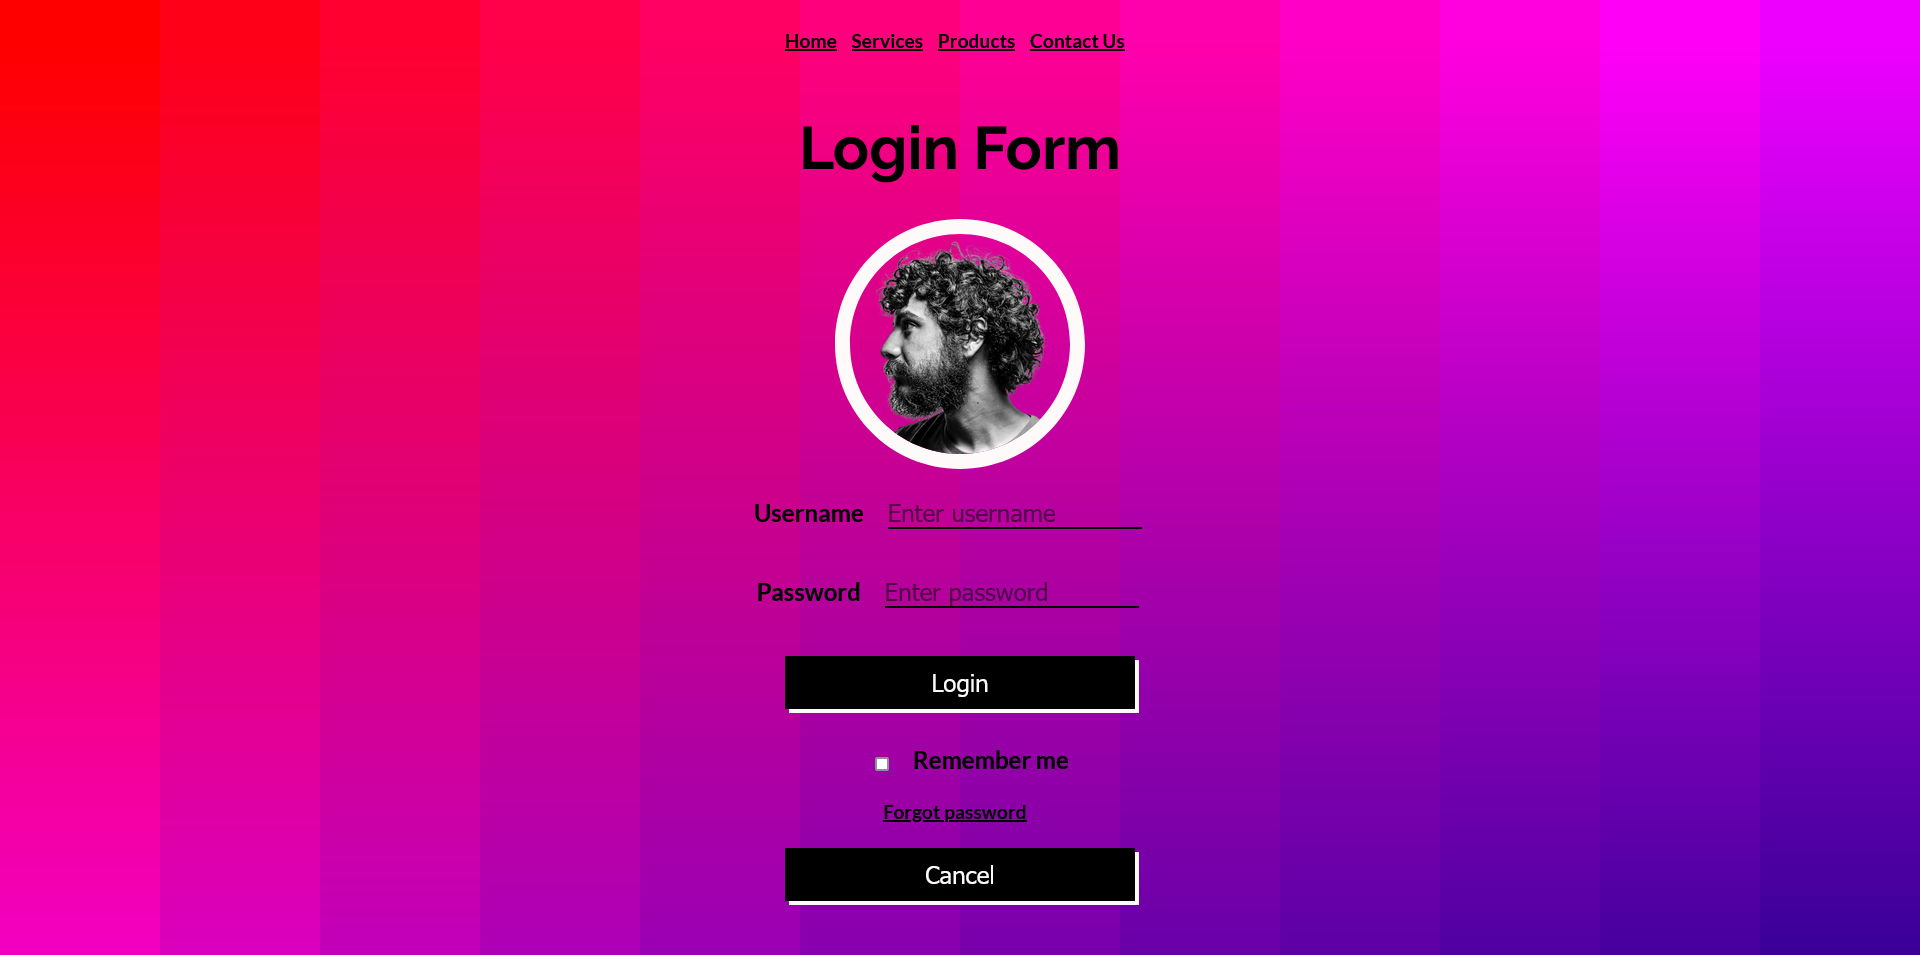 Login Form - Login Form